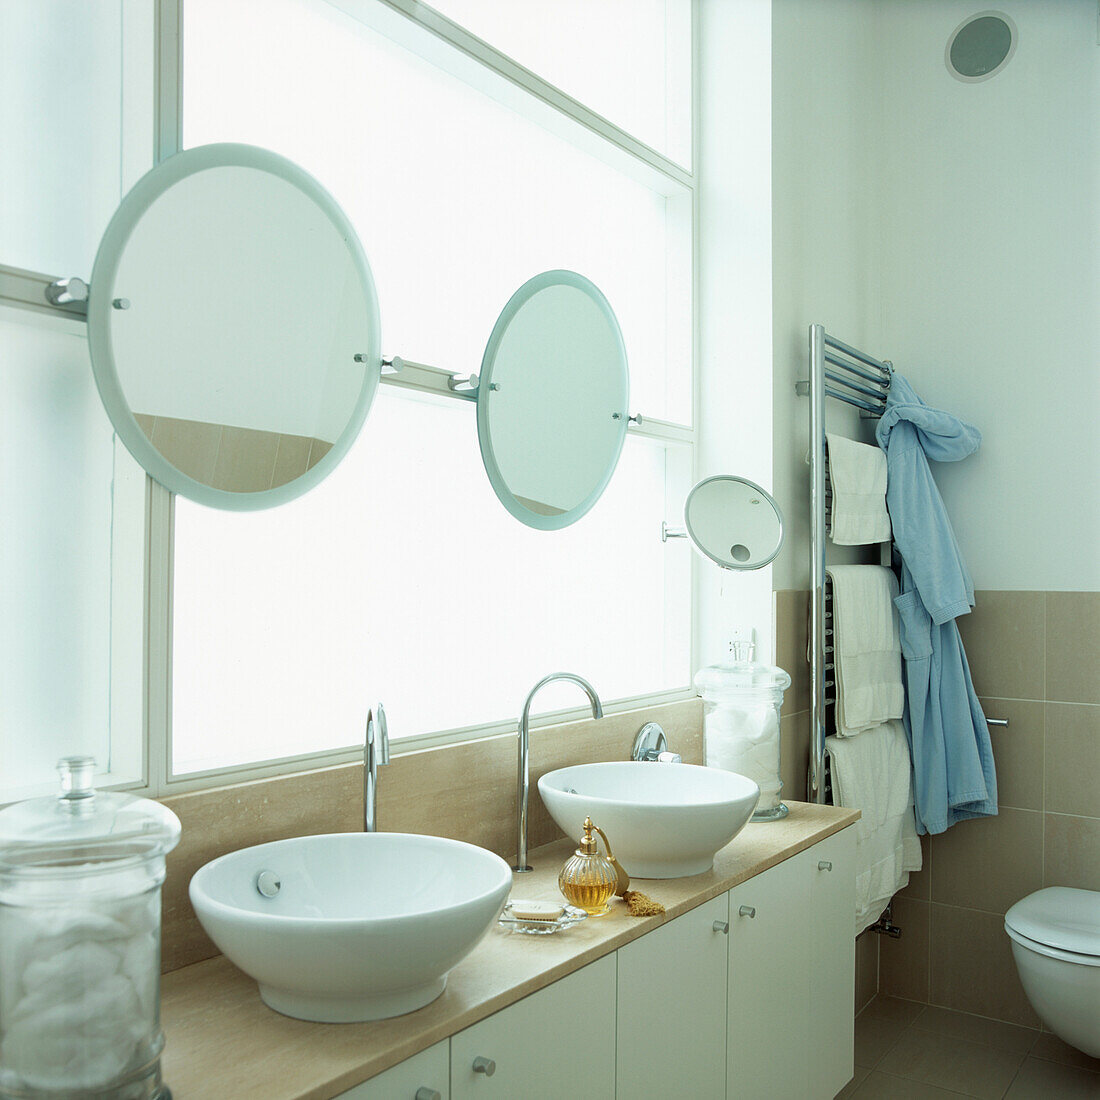 Modernes weißes Badezimmer mit zwei Waschbecken, Spiegeln, Ablageschränken und einem großen Fenster aus Milchglas